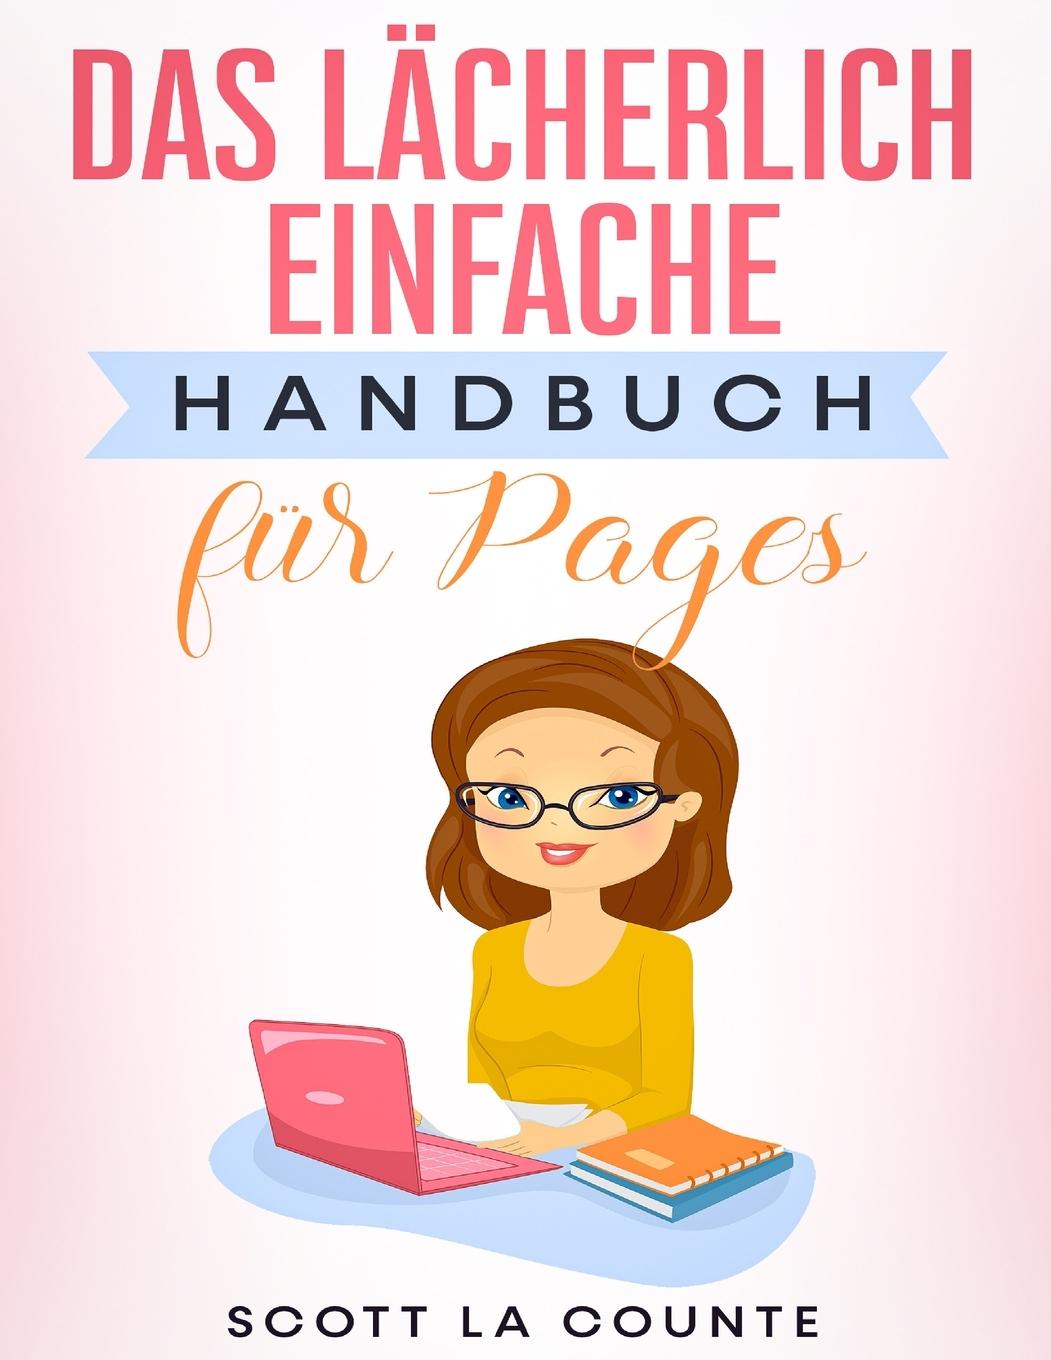 Книга Lacherlich Einfache Handbuch fur Pages 